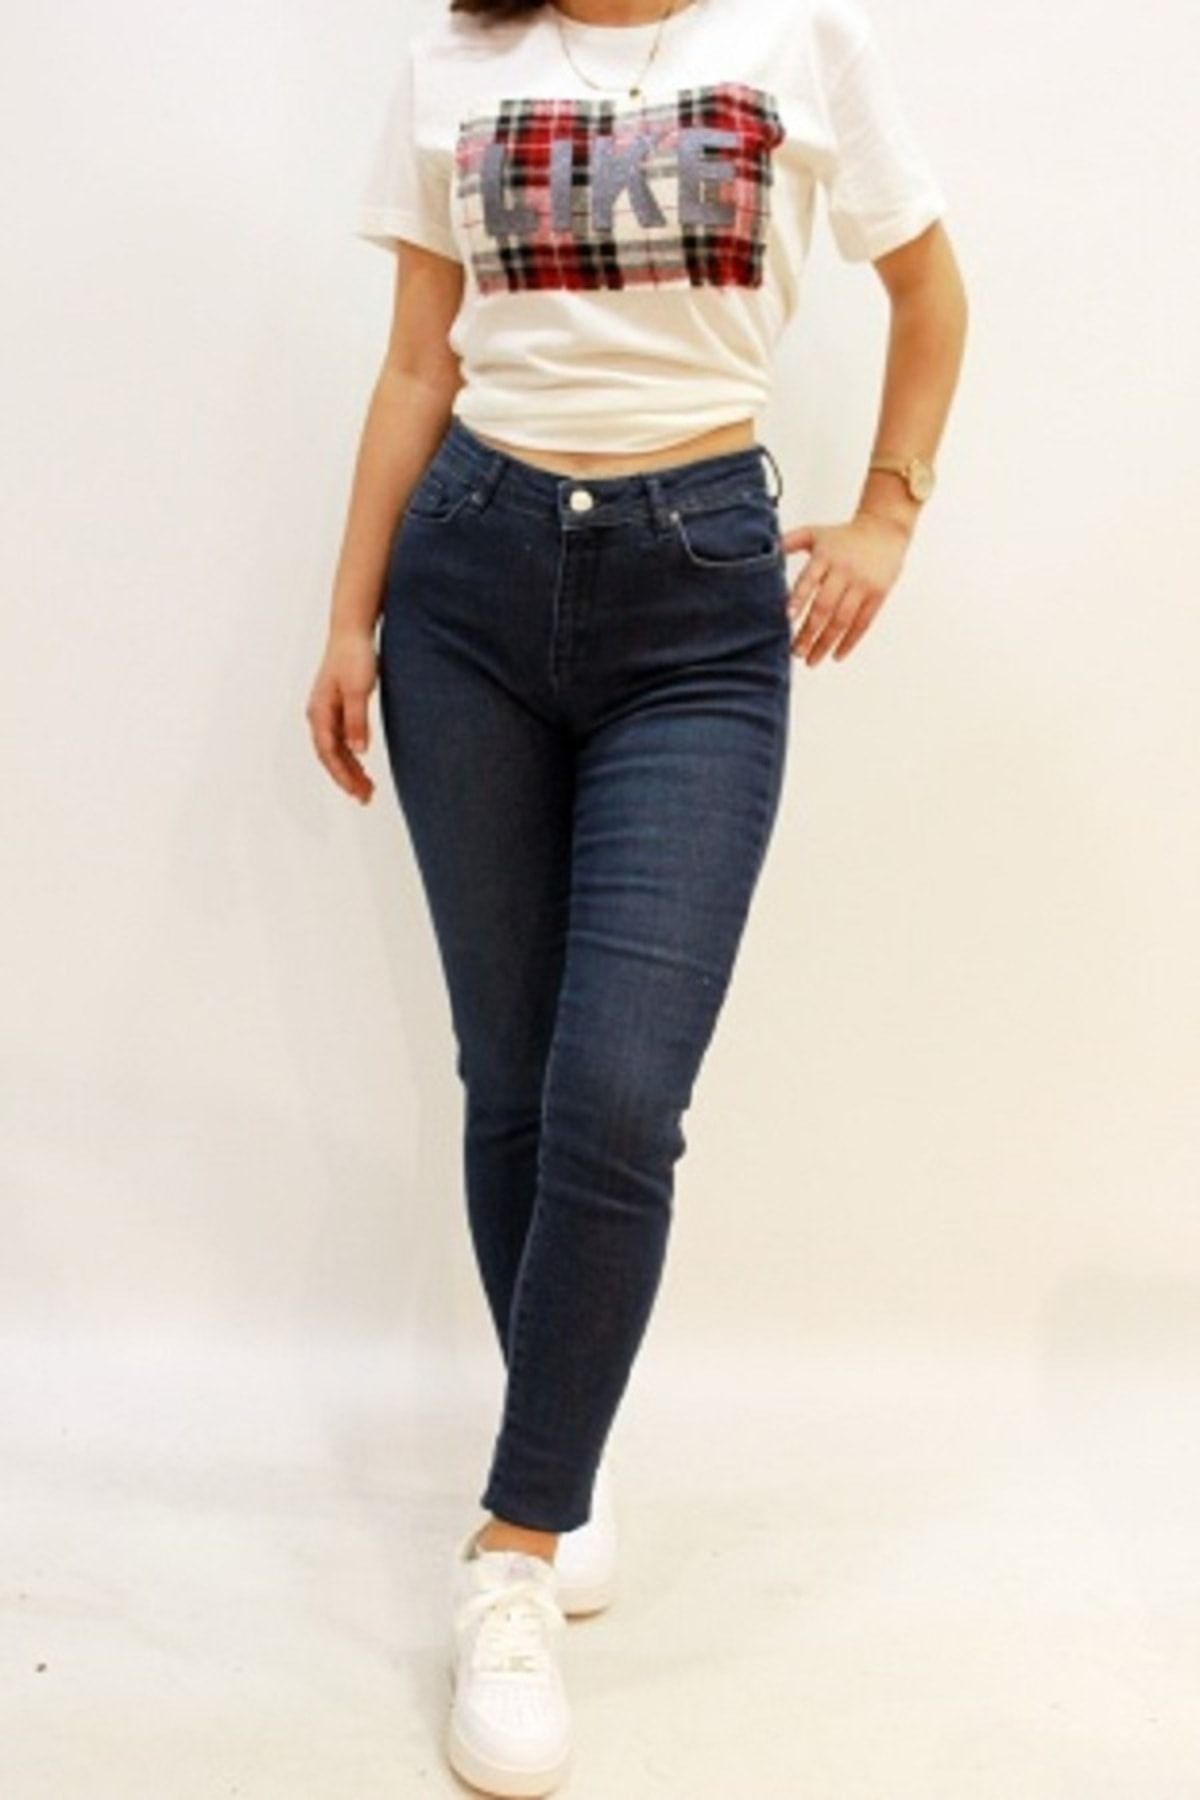 Twister Jeans Mındy 9205-48 Likralı Yüksel Bel Kadın Kot Pantolon Mavi